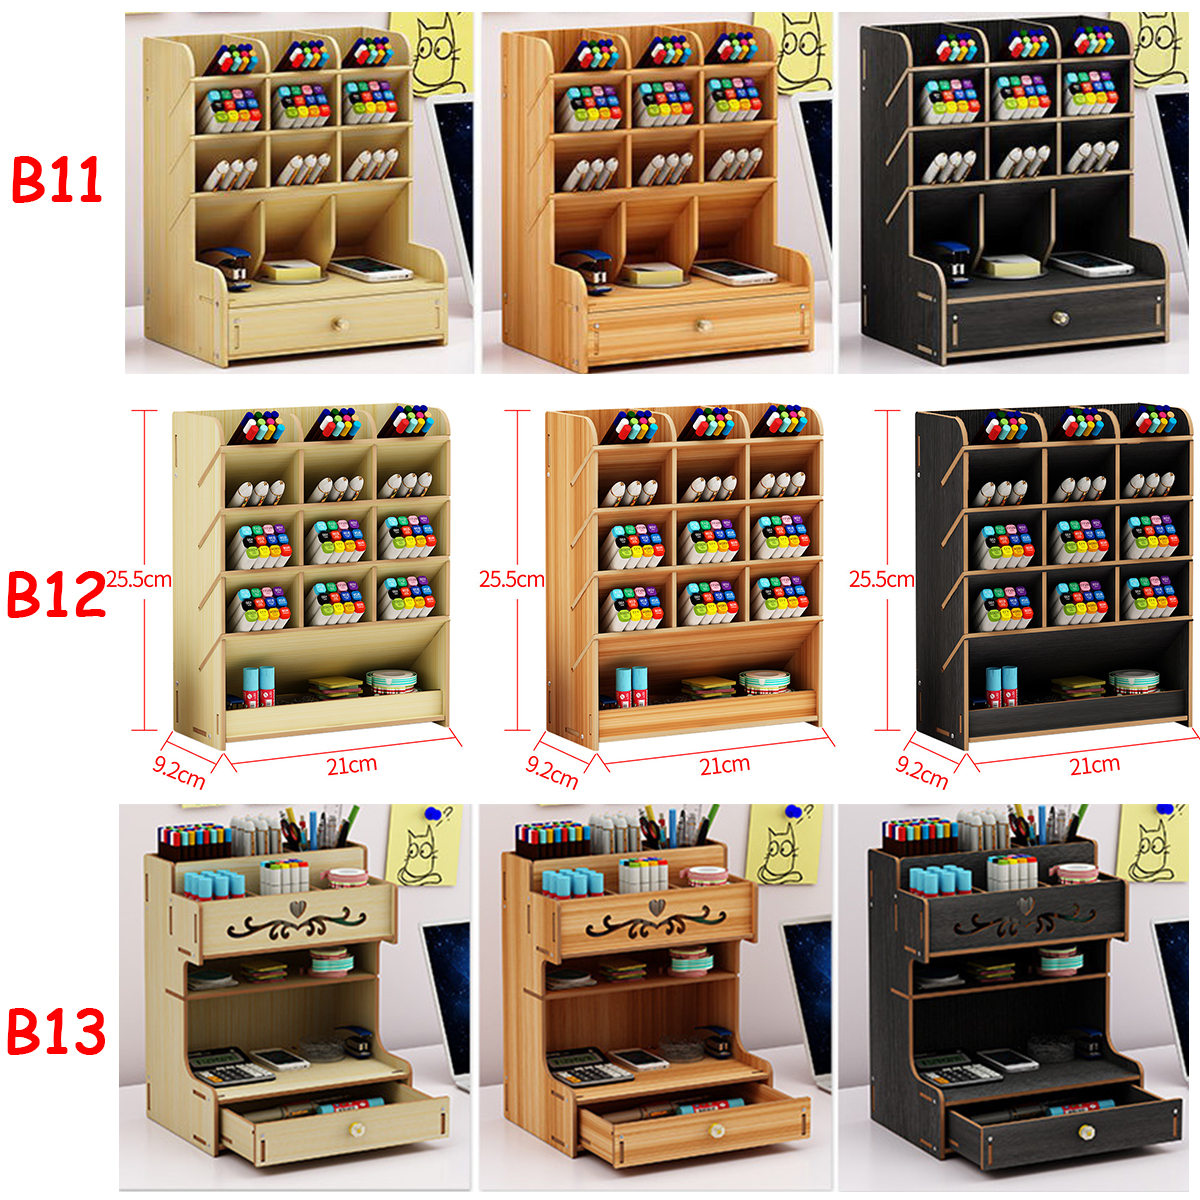 Wooden-Desk-Organizer-Multi-Functional-DIY-Pen-Holder-Box-Cell-Phone-Holder-Desktop-Stationary-Home--1585522-2